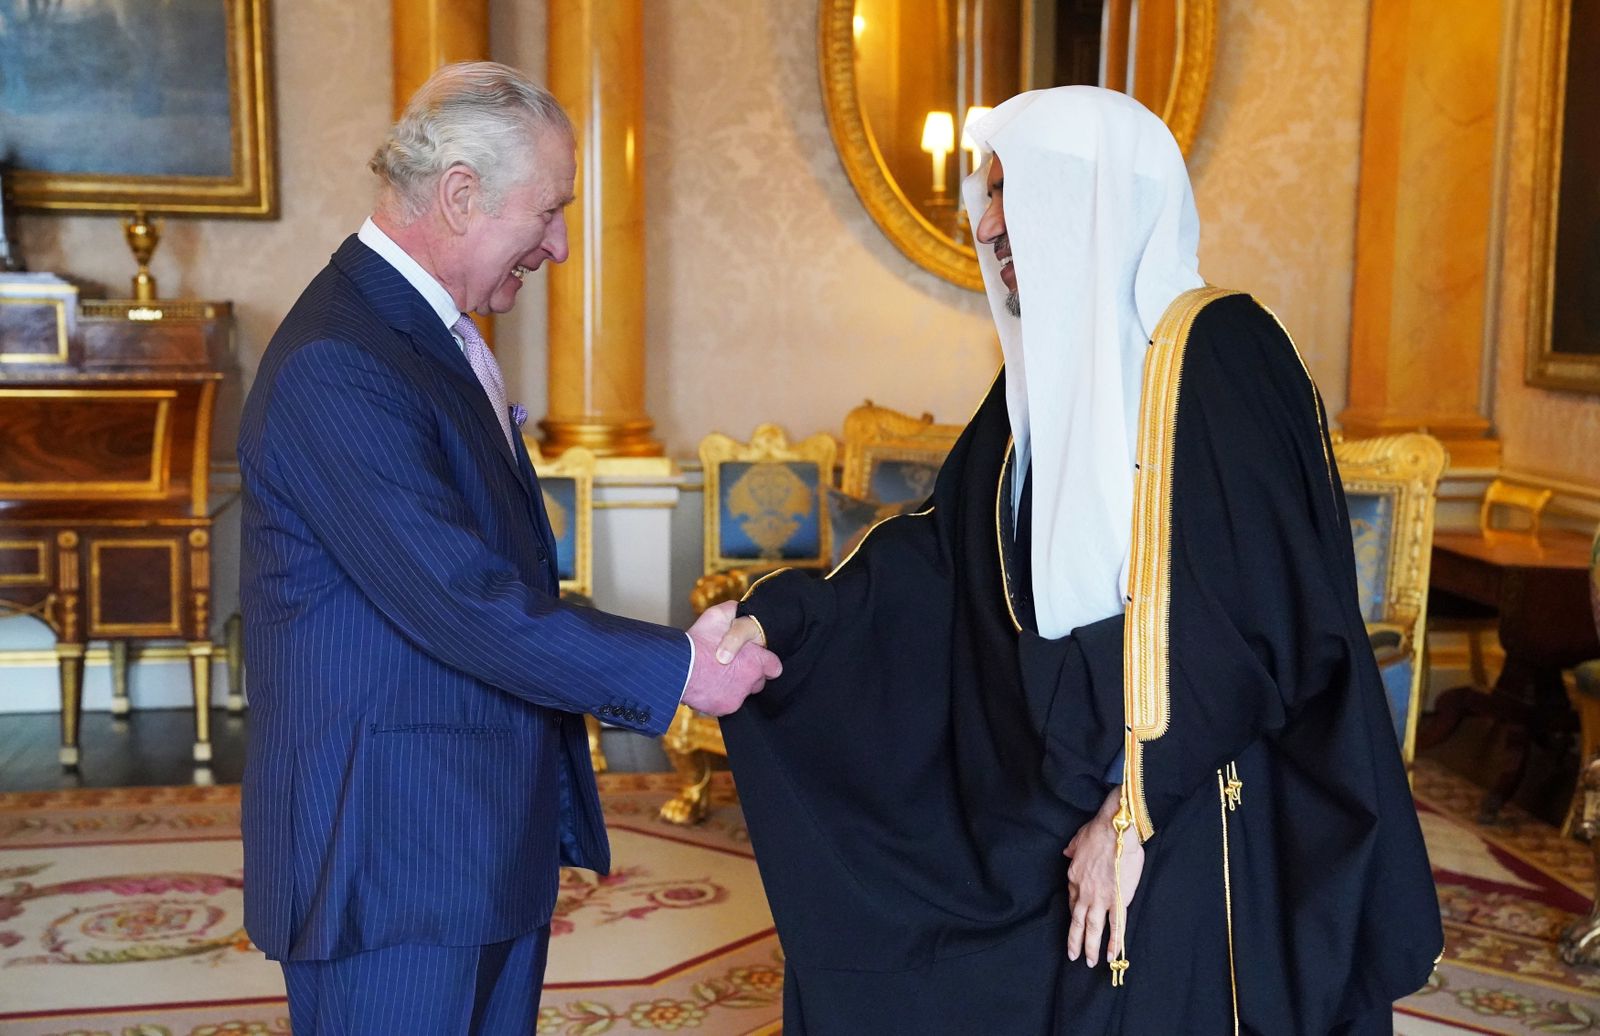 IMG 20230312 WA0000 أول استضافة رسمية لشخصية إسلامية بقصر باكنغهام: الملك تشارلز يستقبل أمين عام رابطة العالم الإسلامي